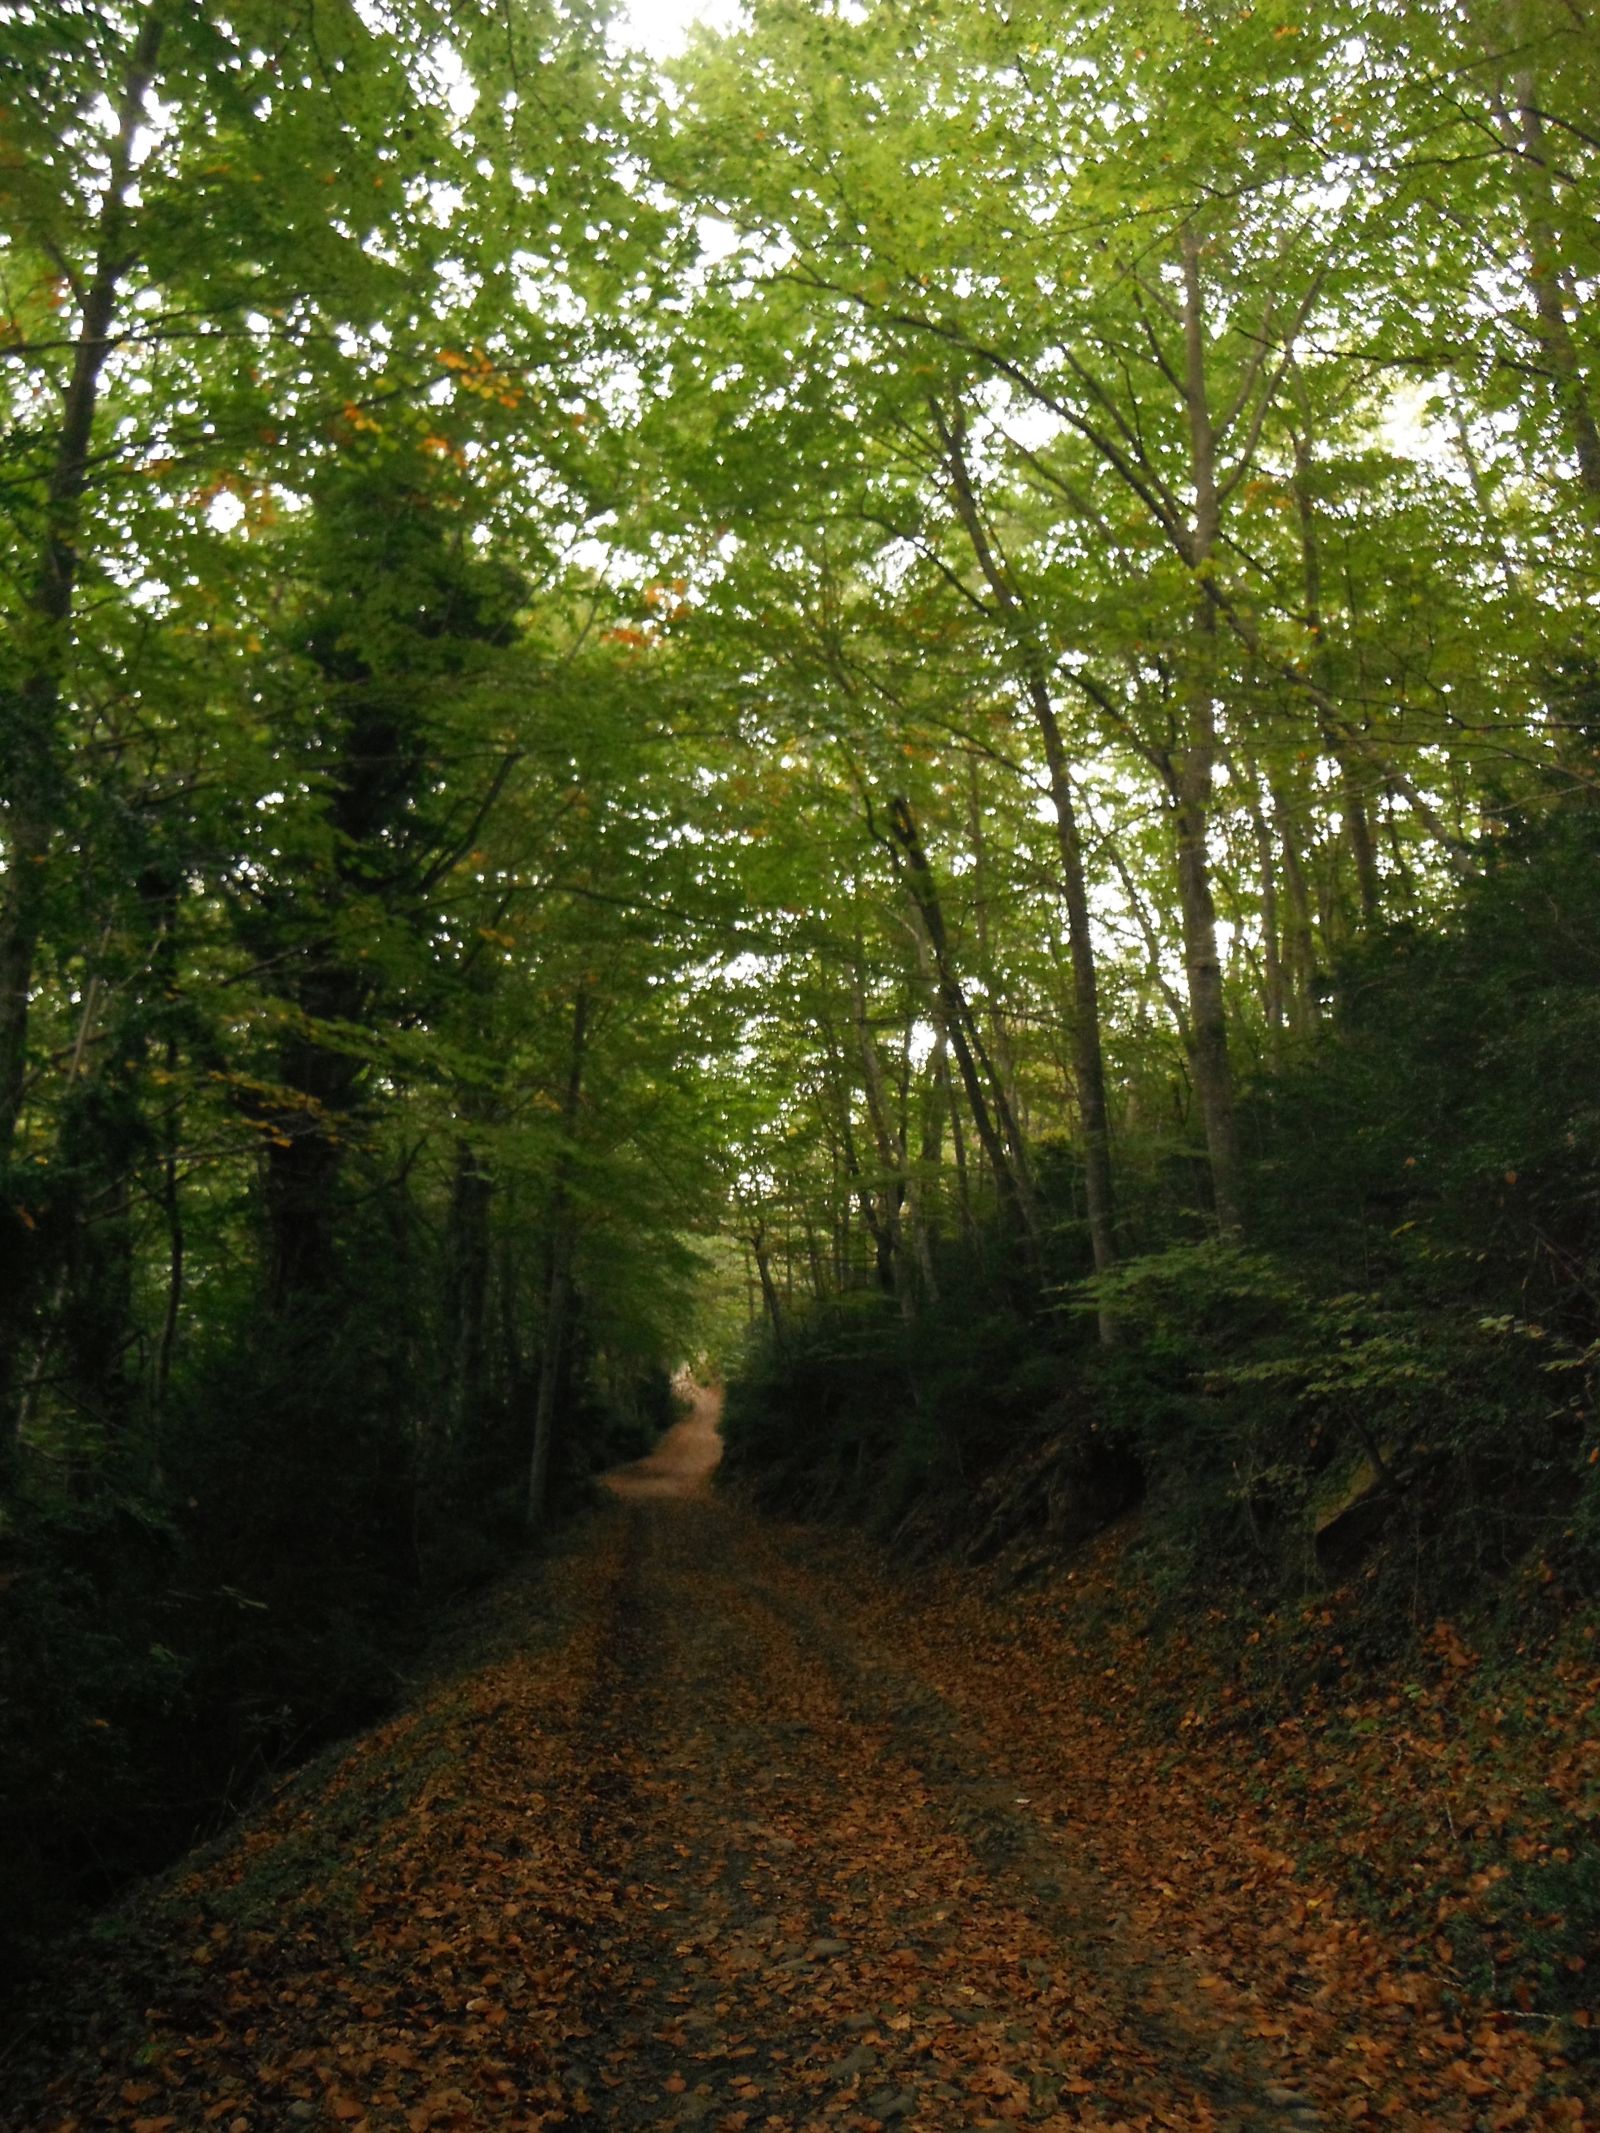 Pero de vez en cuando, el paseo se hace llevadero con los colores del otoño dándonos la bienvenida